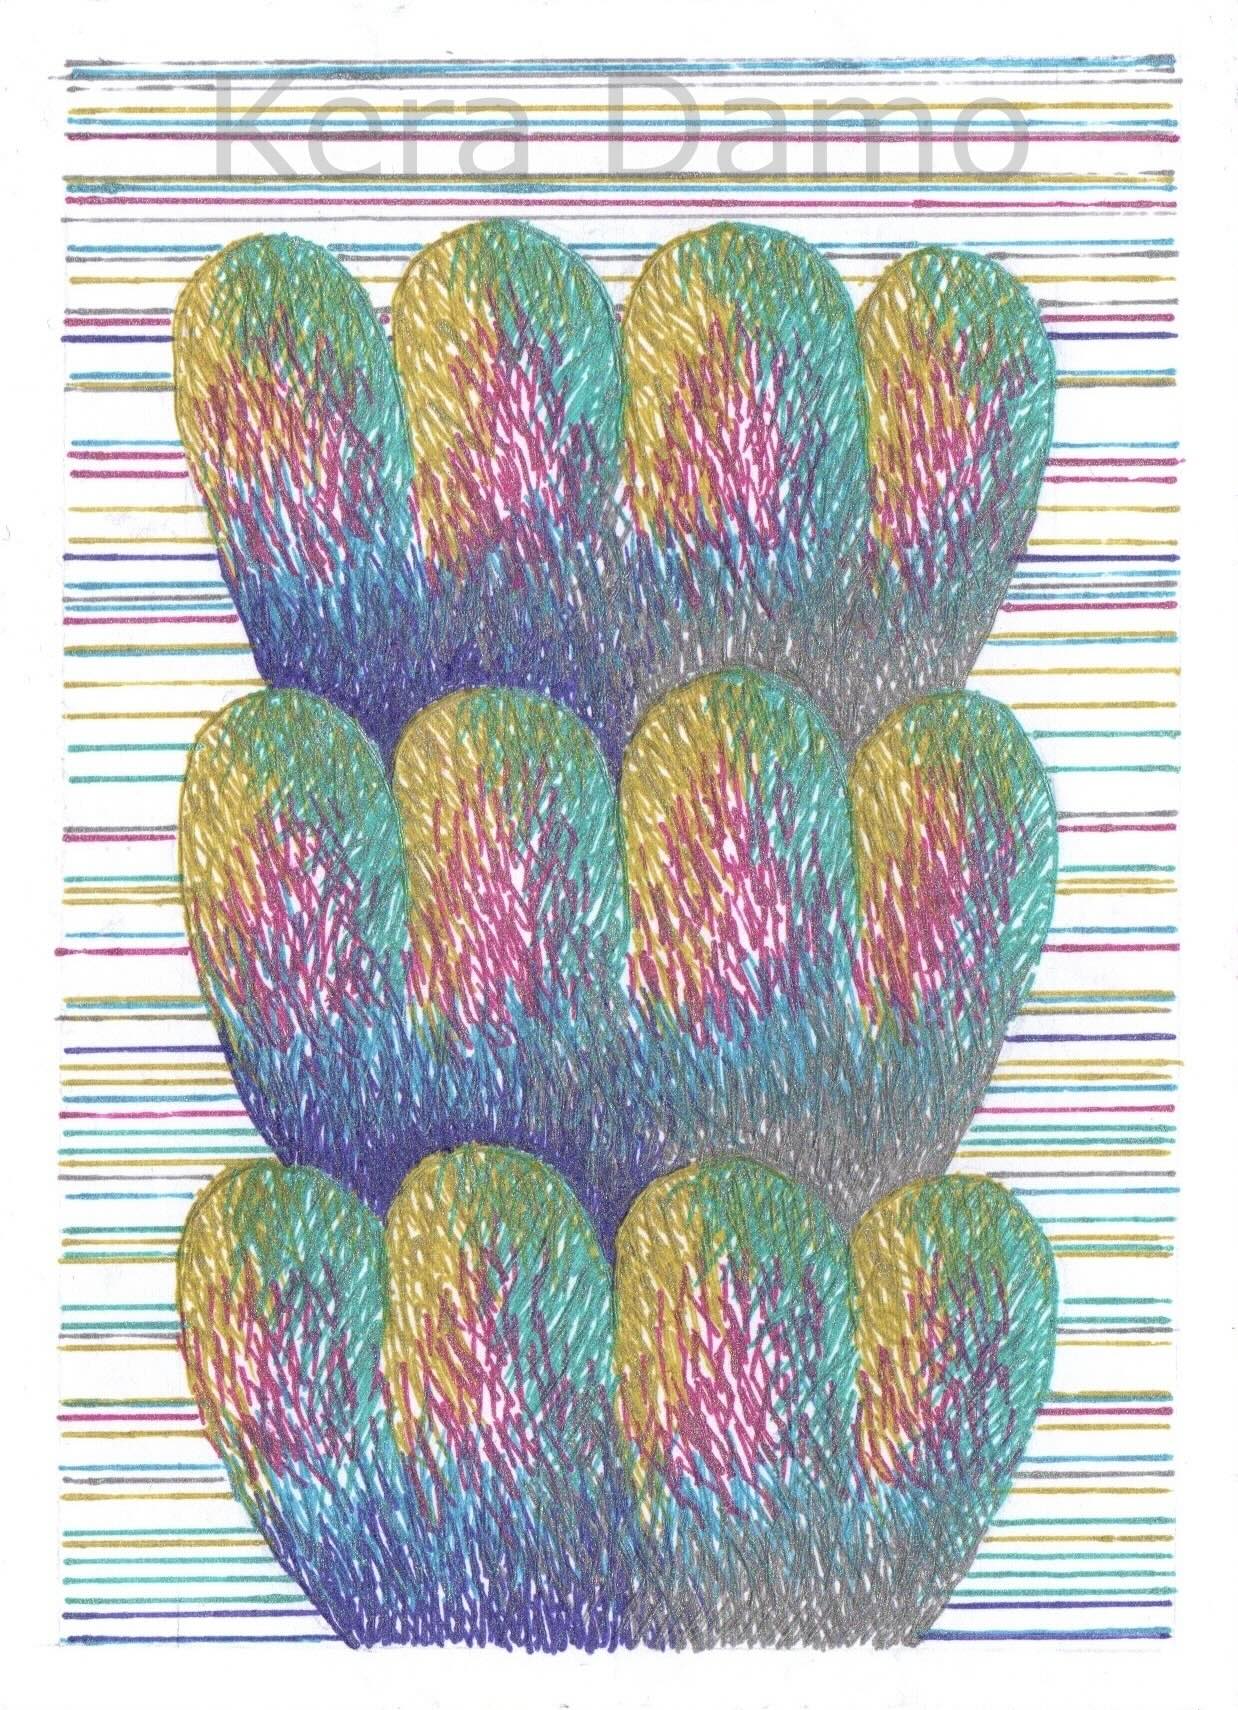 A multicoloured pen drawing using metallic pens, made by visual artist Kera Damo from the Hague / Een meerkleurige pentekening met metallic pennen, gemaakt door beeldend kunstenaar Kera Damo uit Den Haag